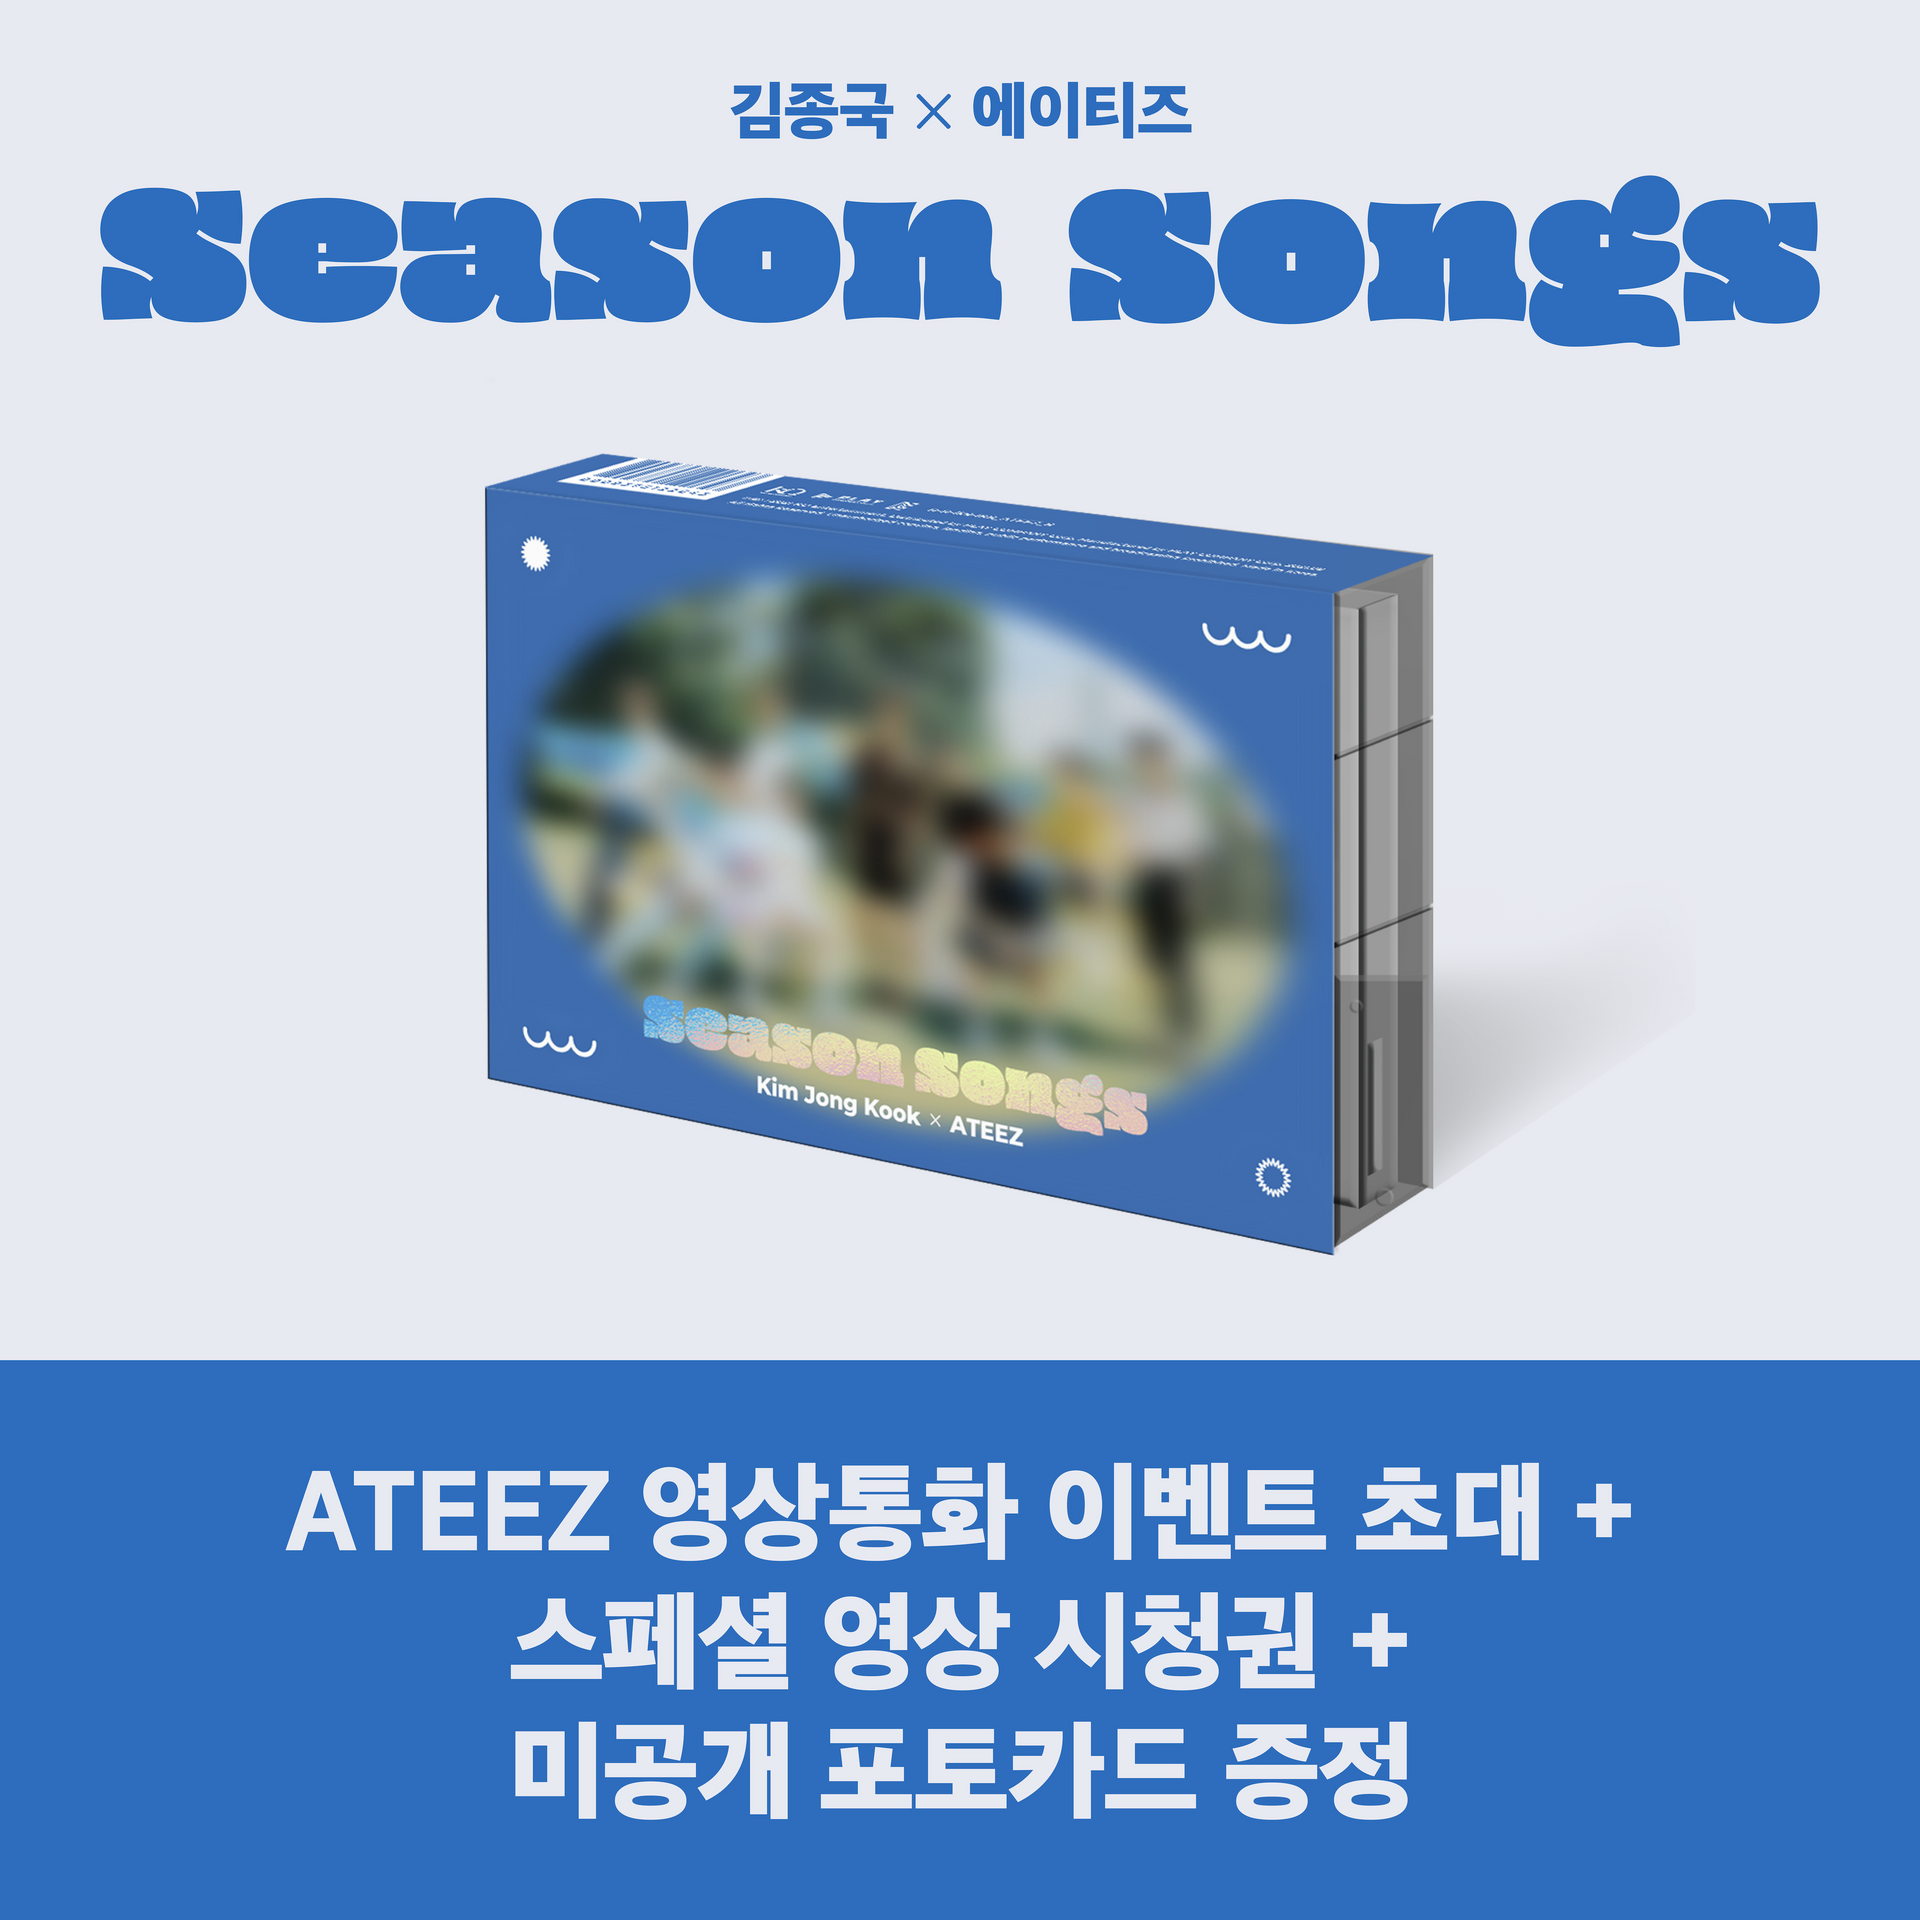 Kim Jong Kook X ATEEZ [Season Songs] - hello82 exclusive